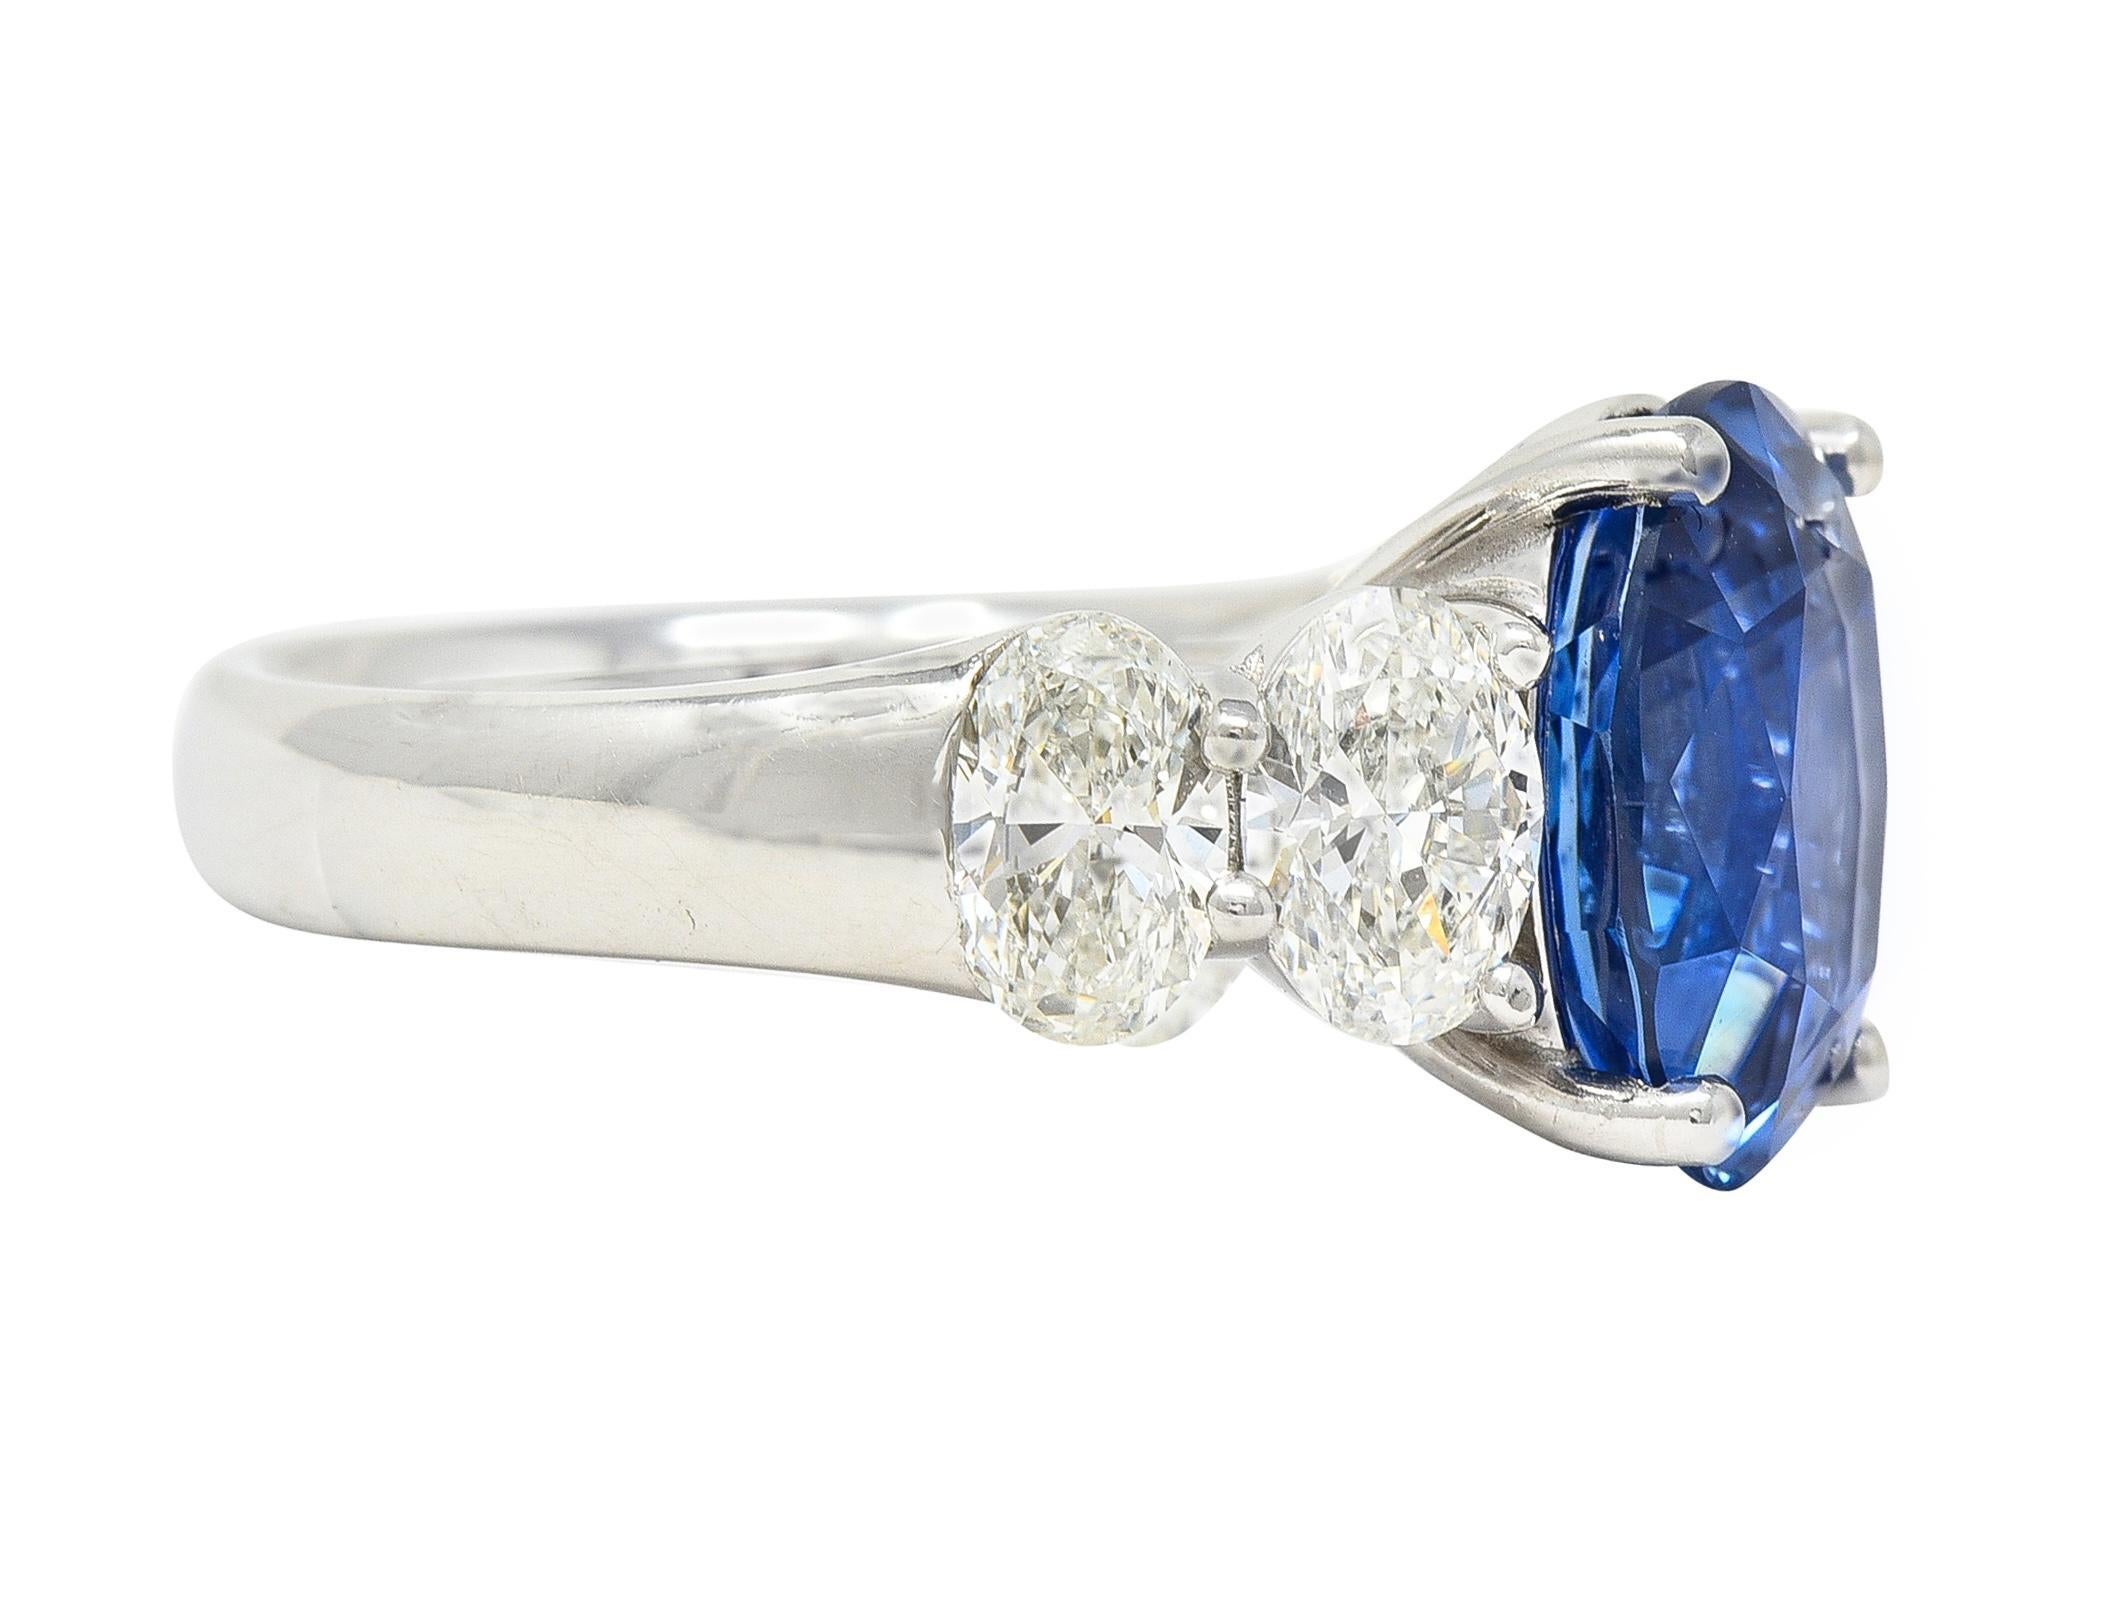 Centré sur un saphir de taille ovale pesant 5.31 carats - bleu vibrant transparent 
Nature d'origine sri lankaise - serti en panier et flanqué de diamants 
Taille ovale et poids total d'environ 1,84 carats 
Couleur L avec clarté VS2 - serti dans des